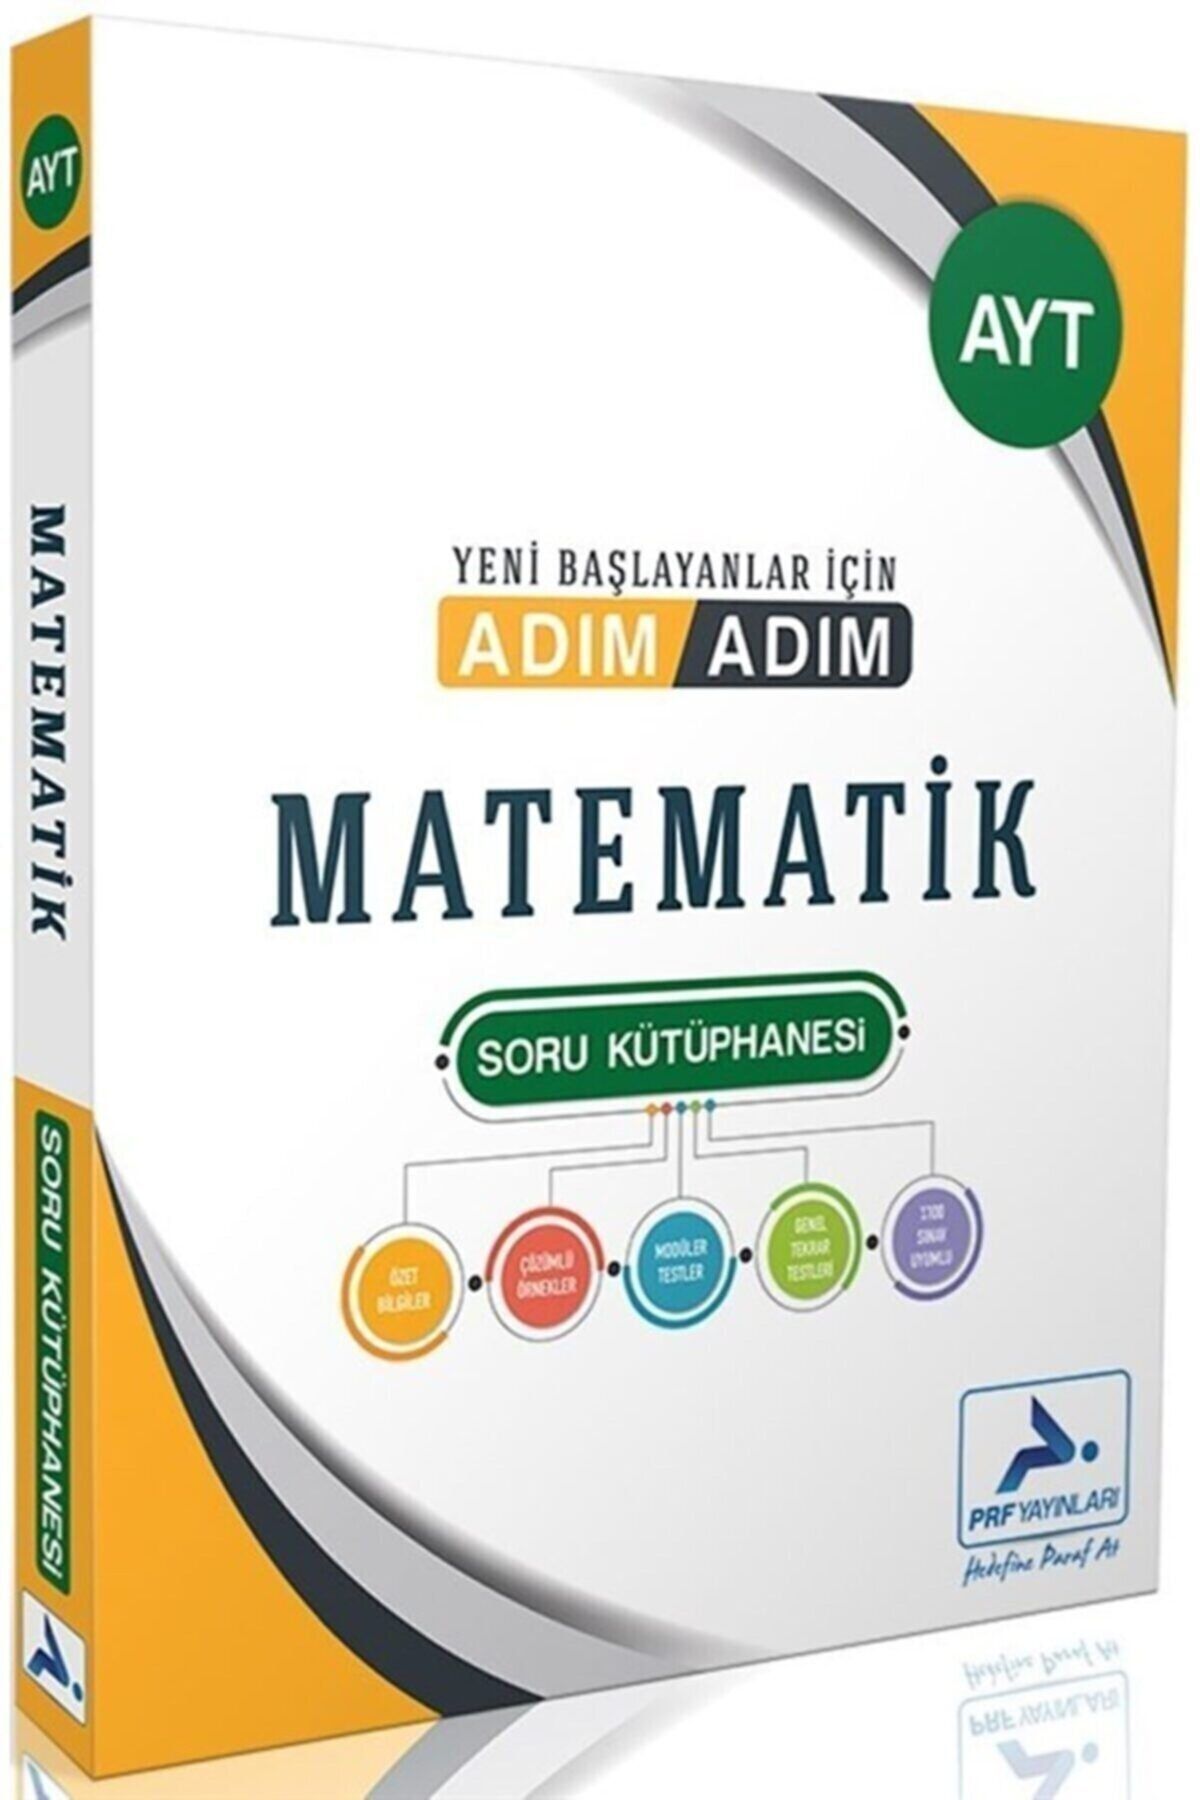 Paraf Yayınları Prf Yayınları Ayt Matematik Adım Adım Soru Kütüphanesi